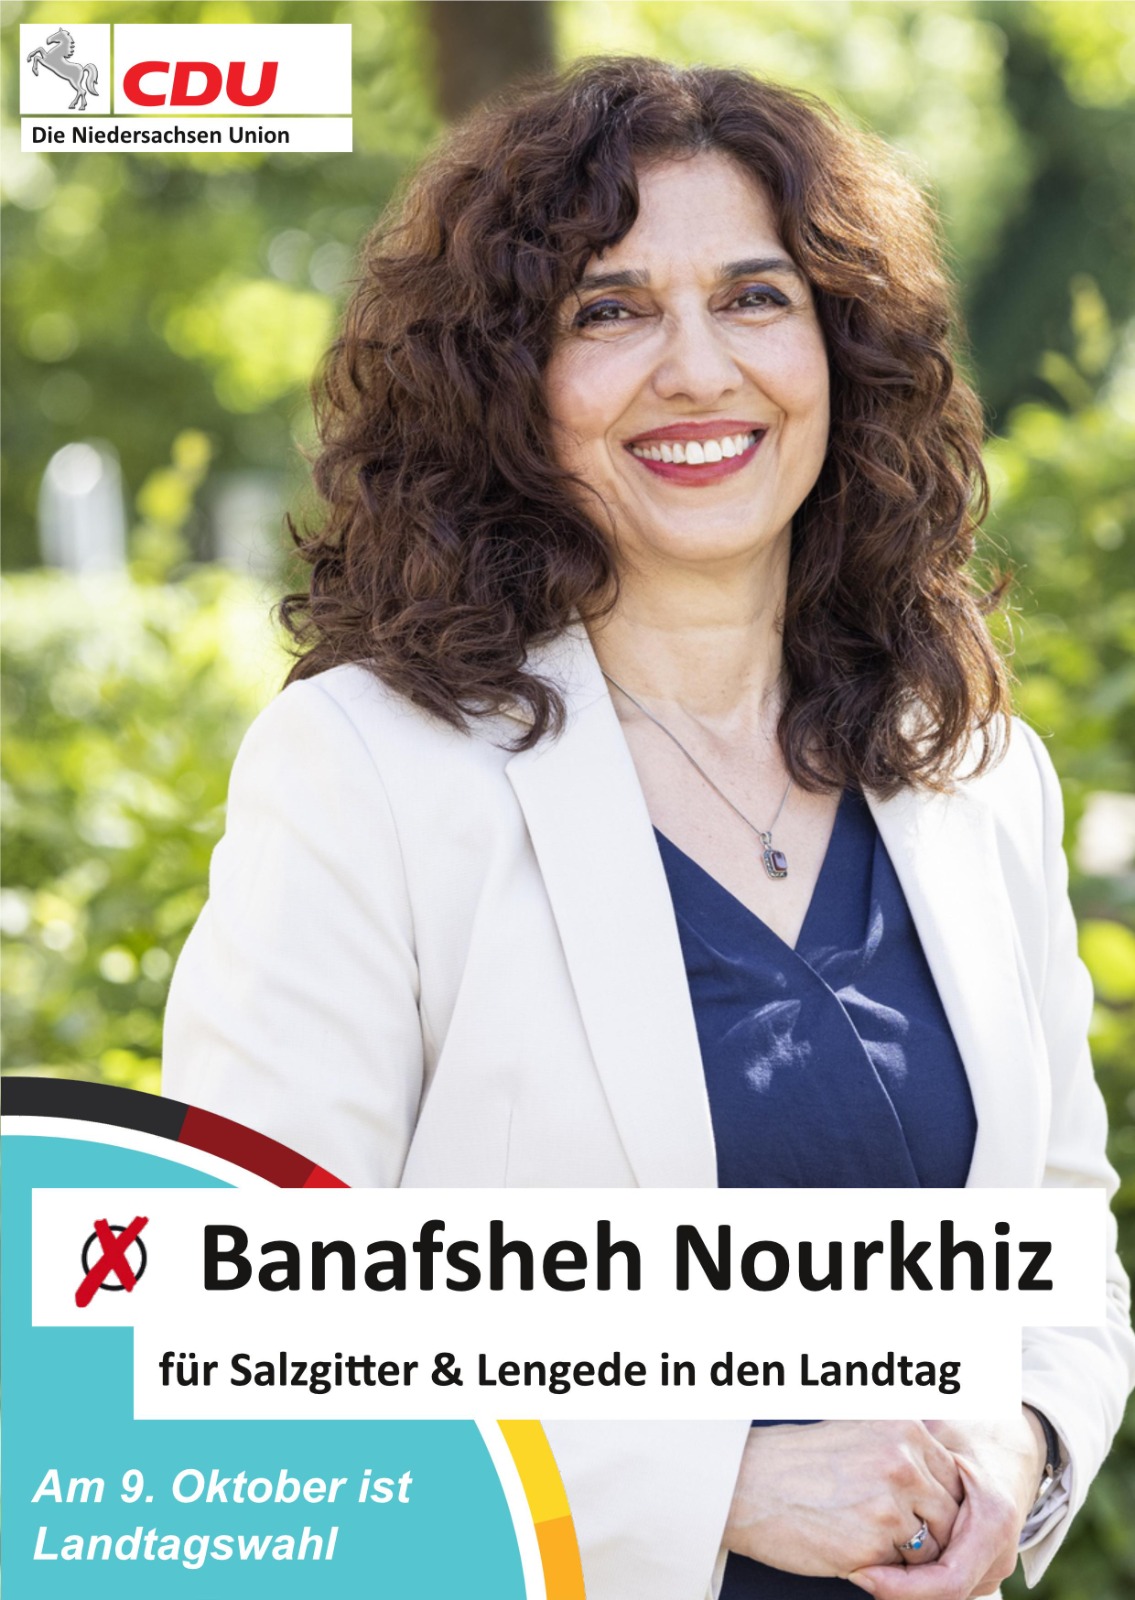 Banafsheh Nourkhiz